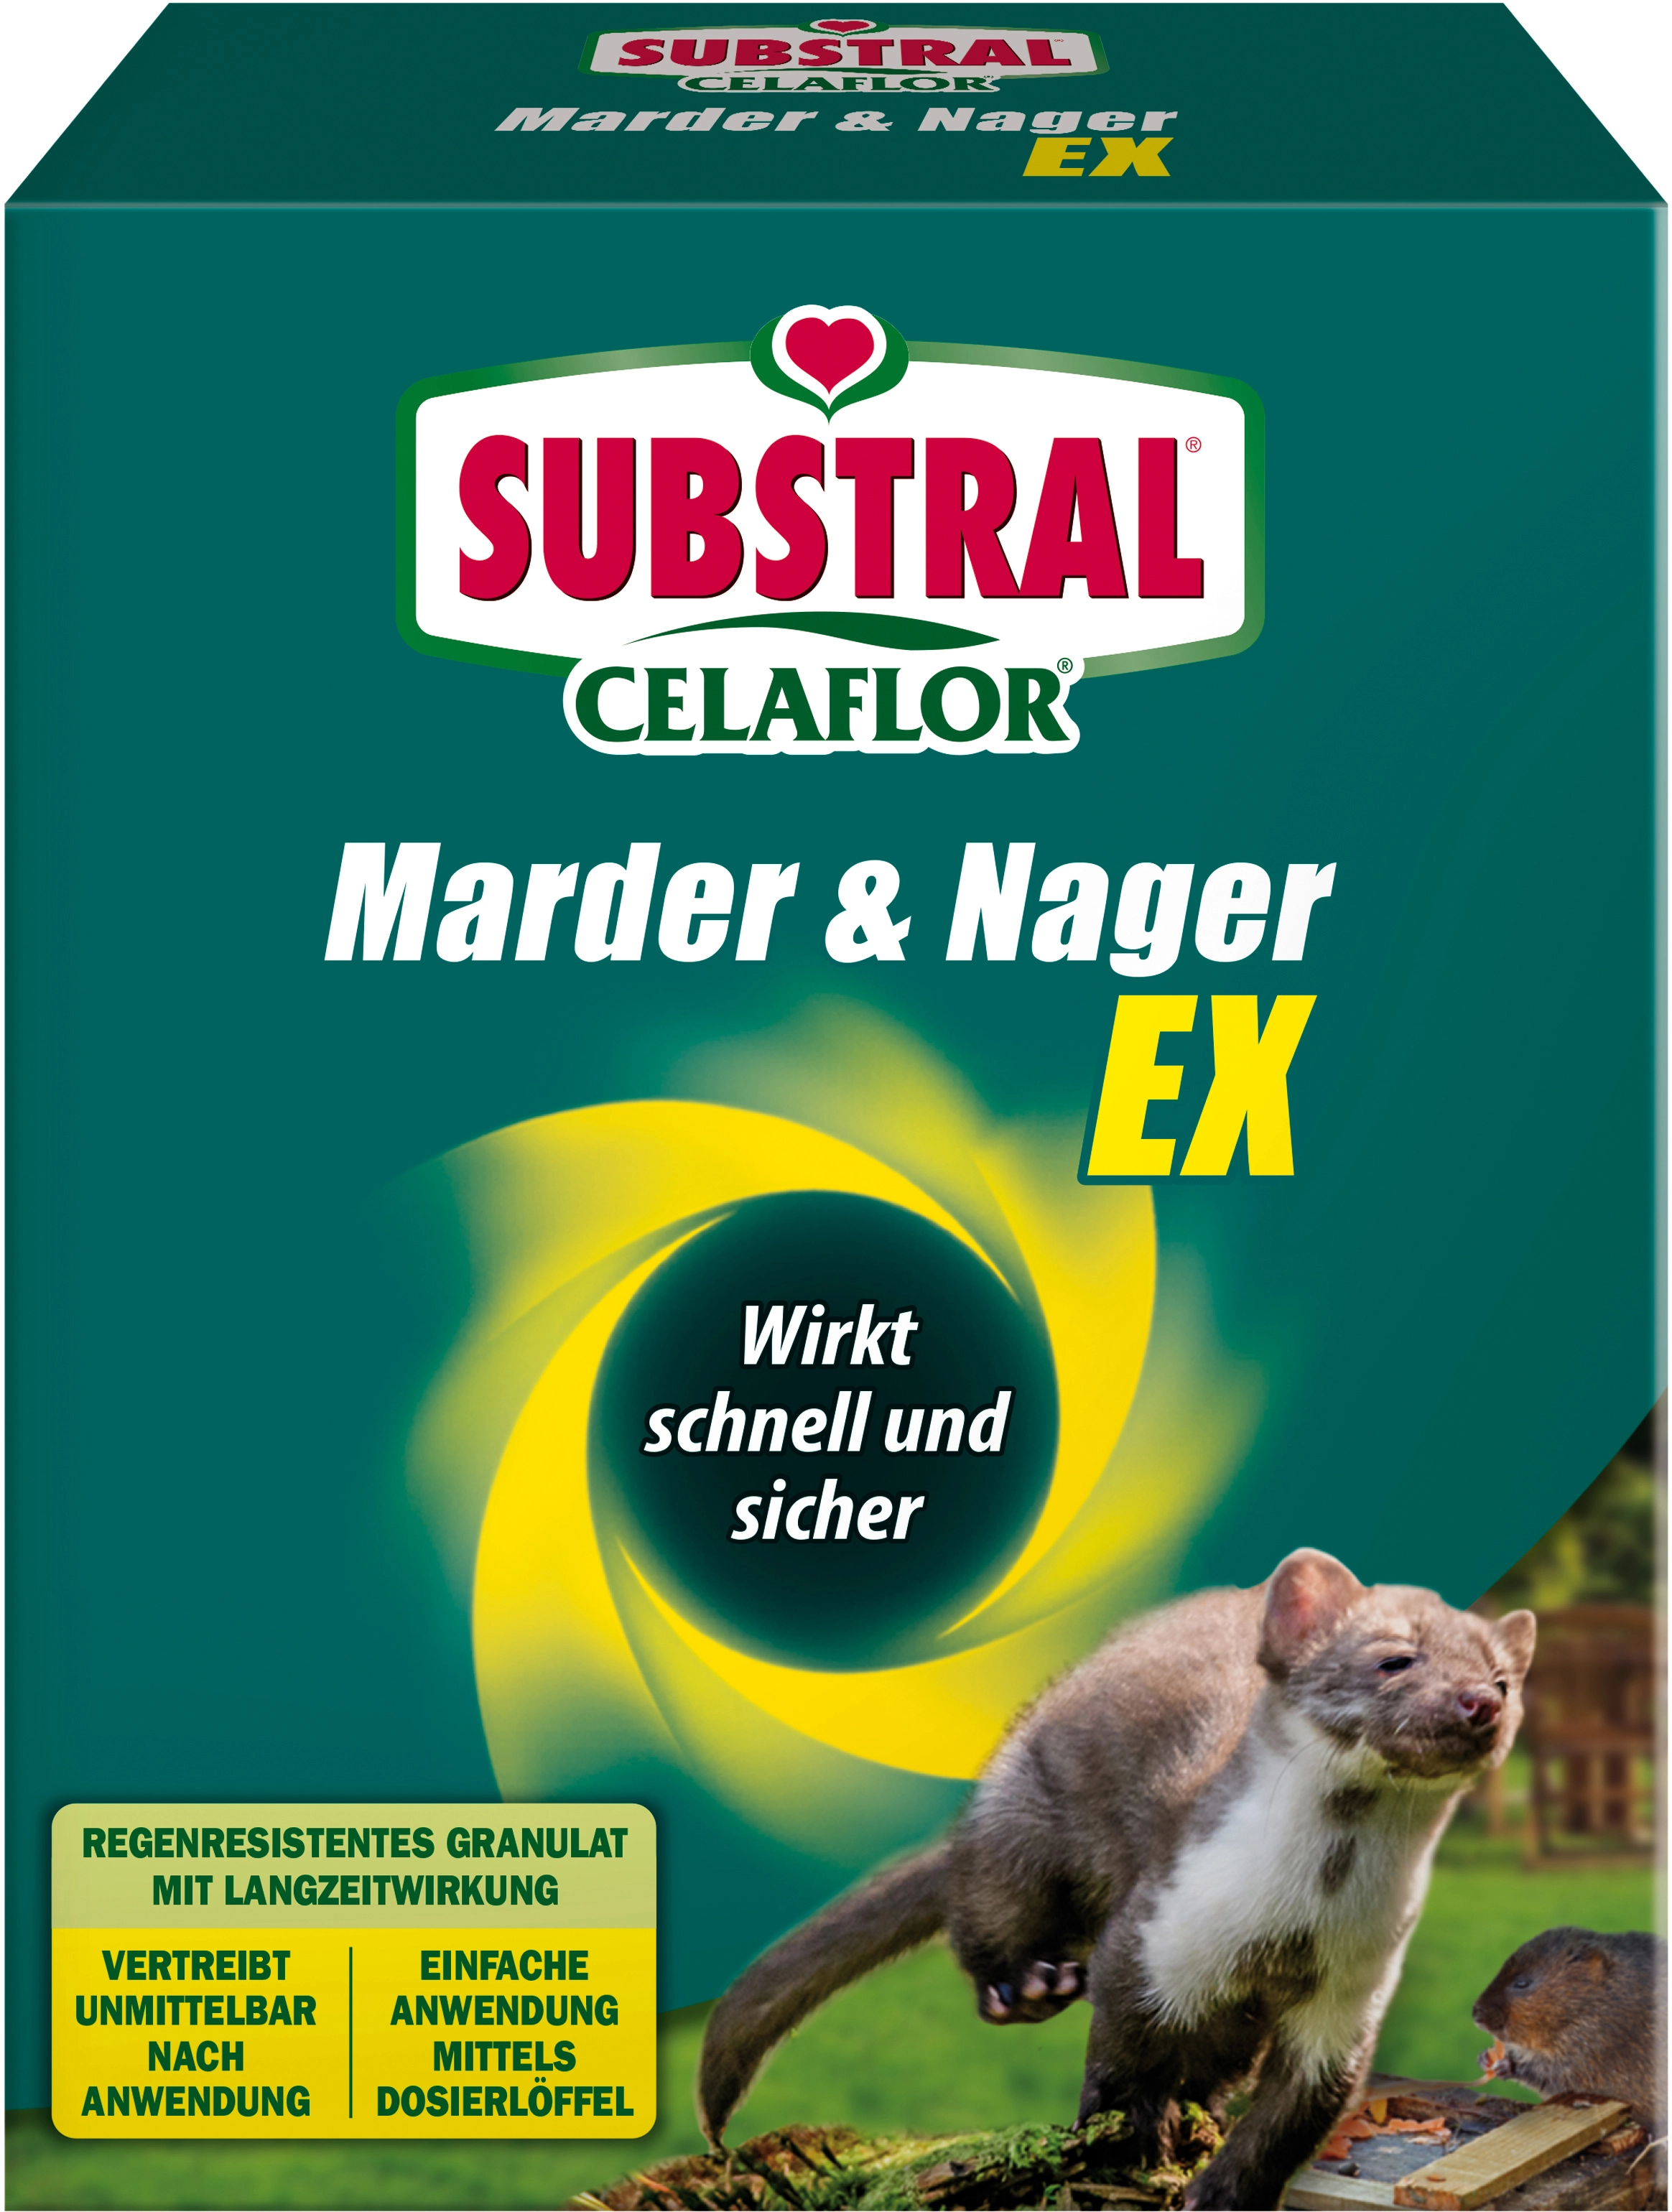 Substral Celaflor Marder und Nager Ex 300 g kaufen bei OBI